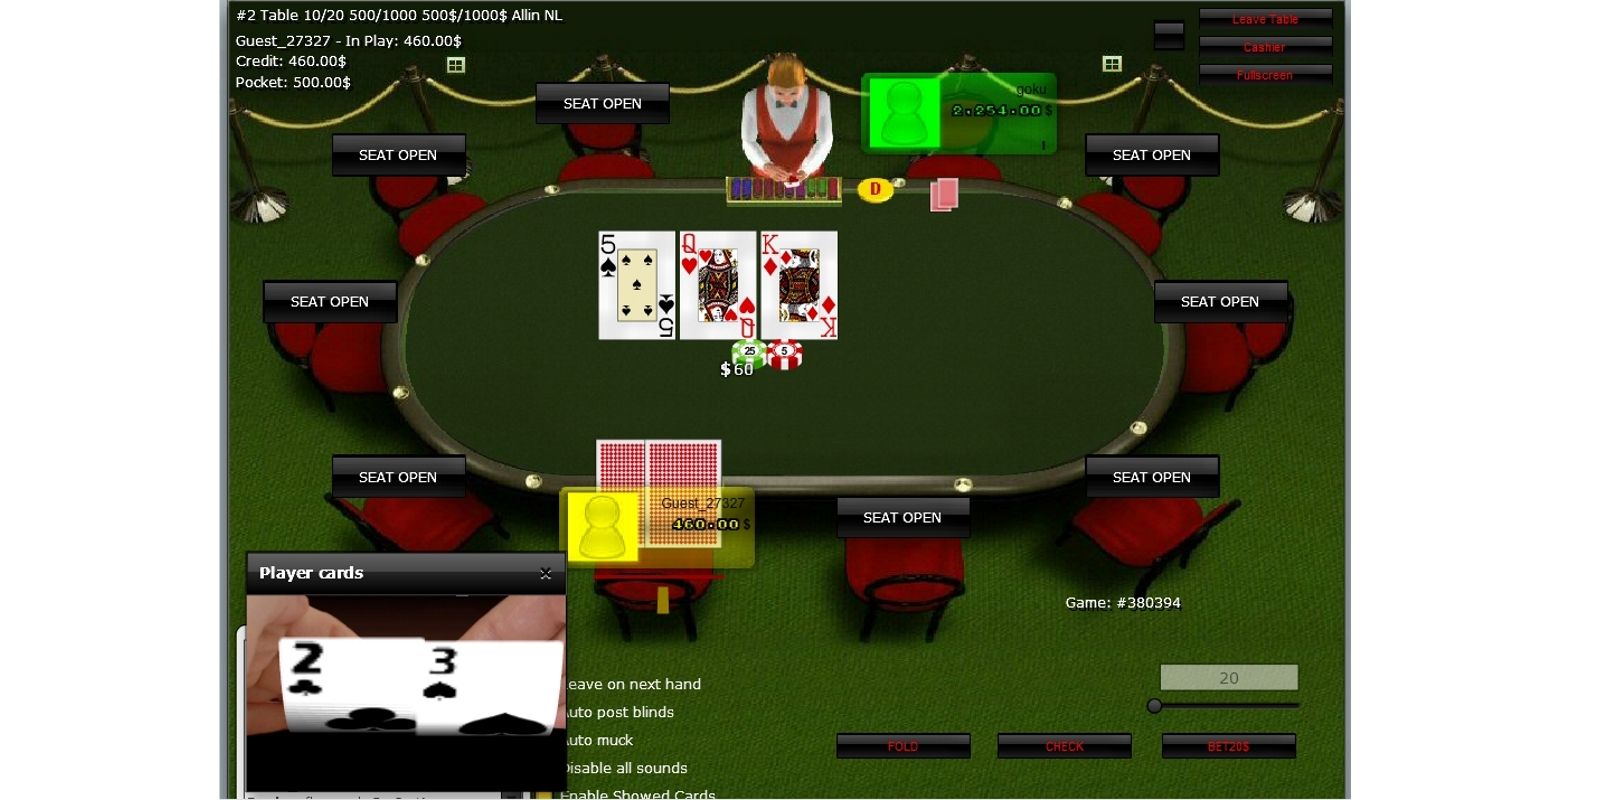 casino poker 888